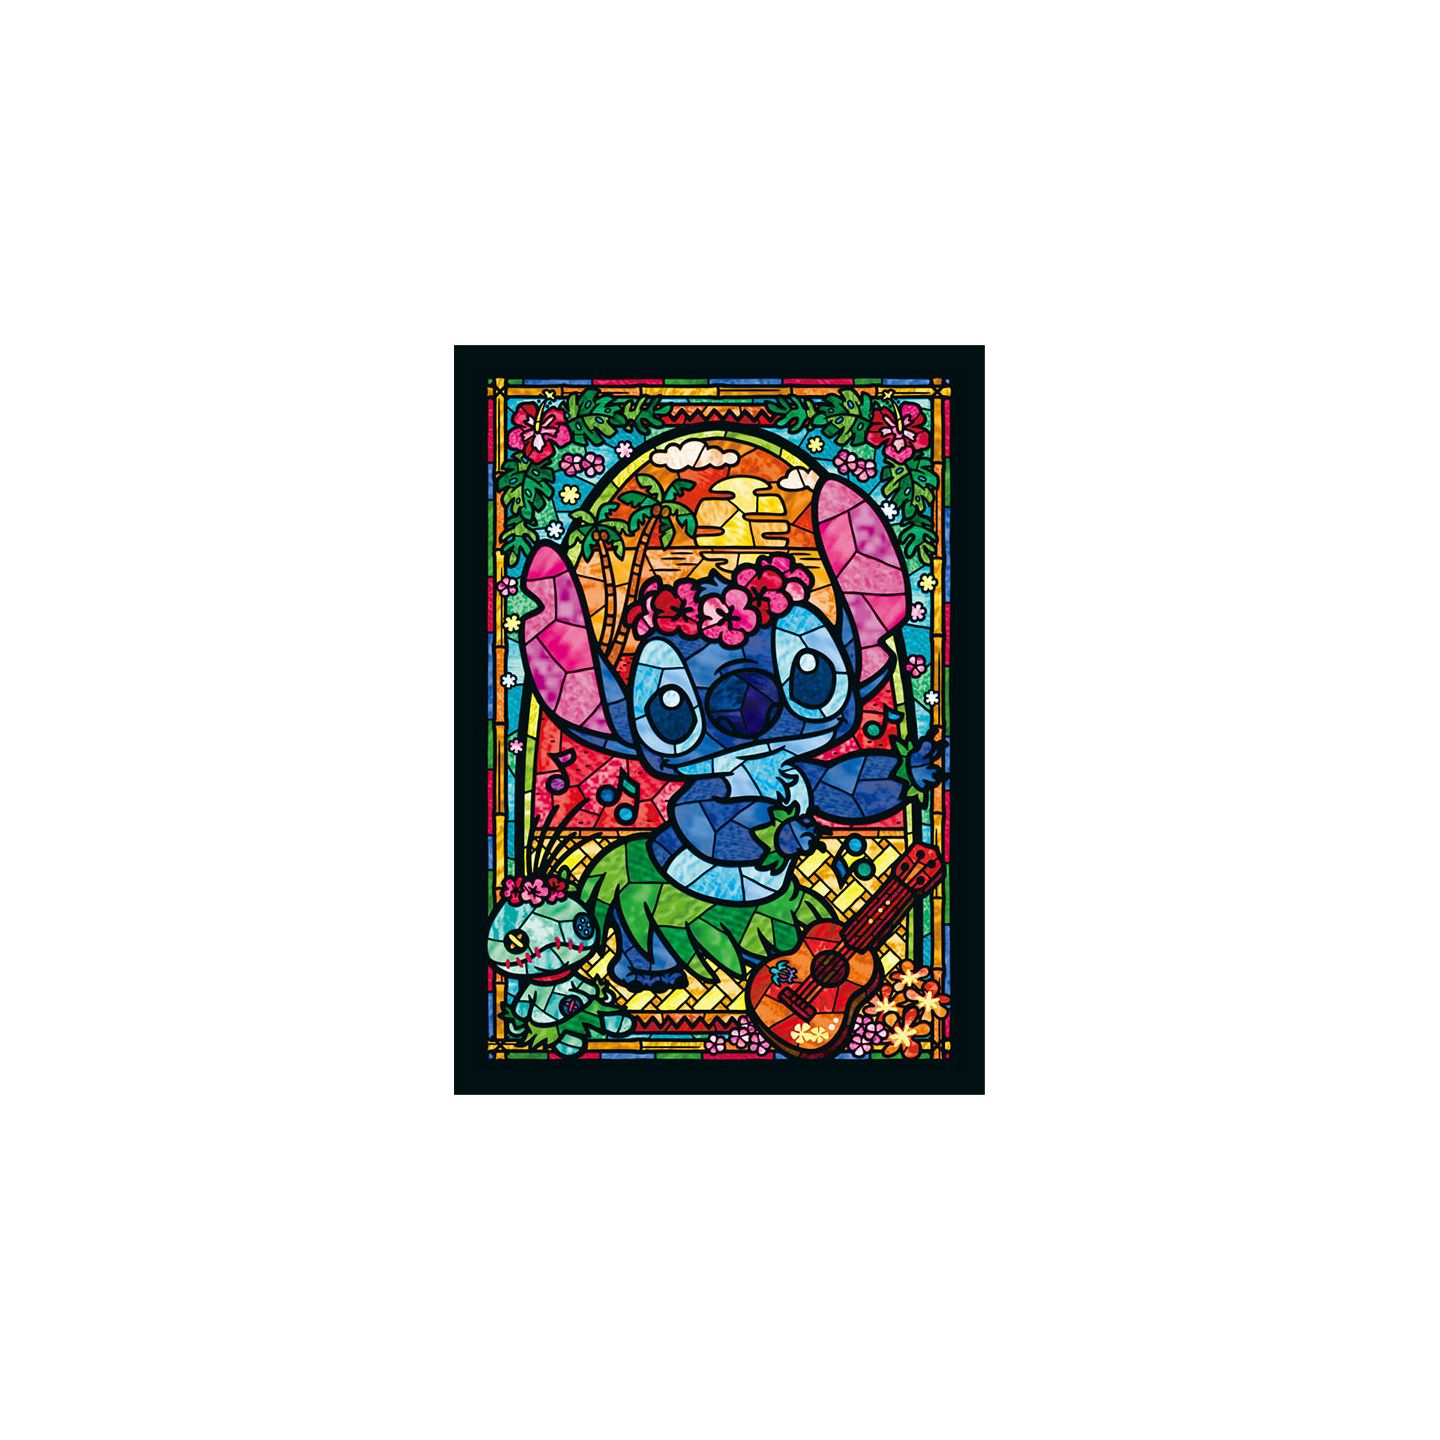 TENYO - DISNEY Lilo & Stitch: Stitch - 266 Piece Stained Glass Jigsaw Puzzle  DSG-266-758